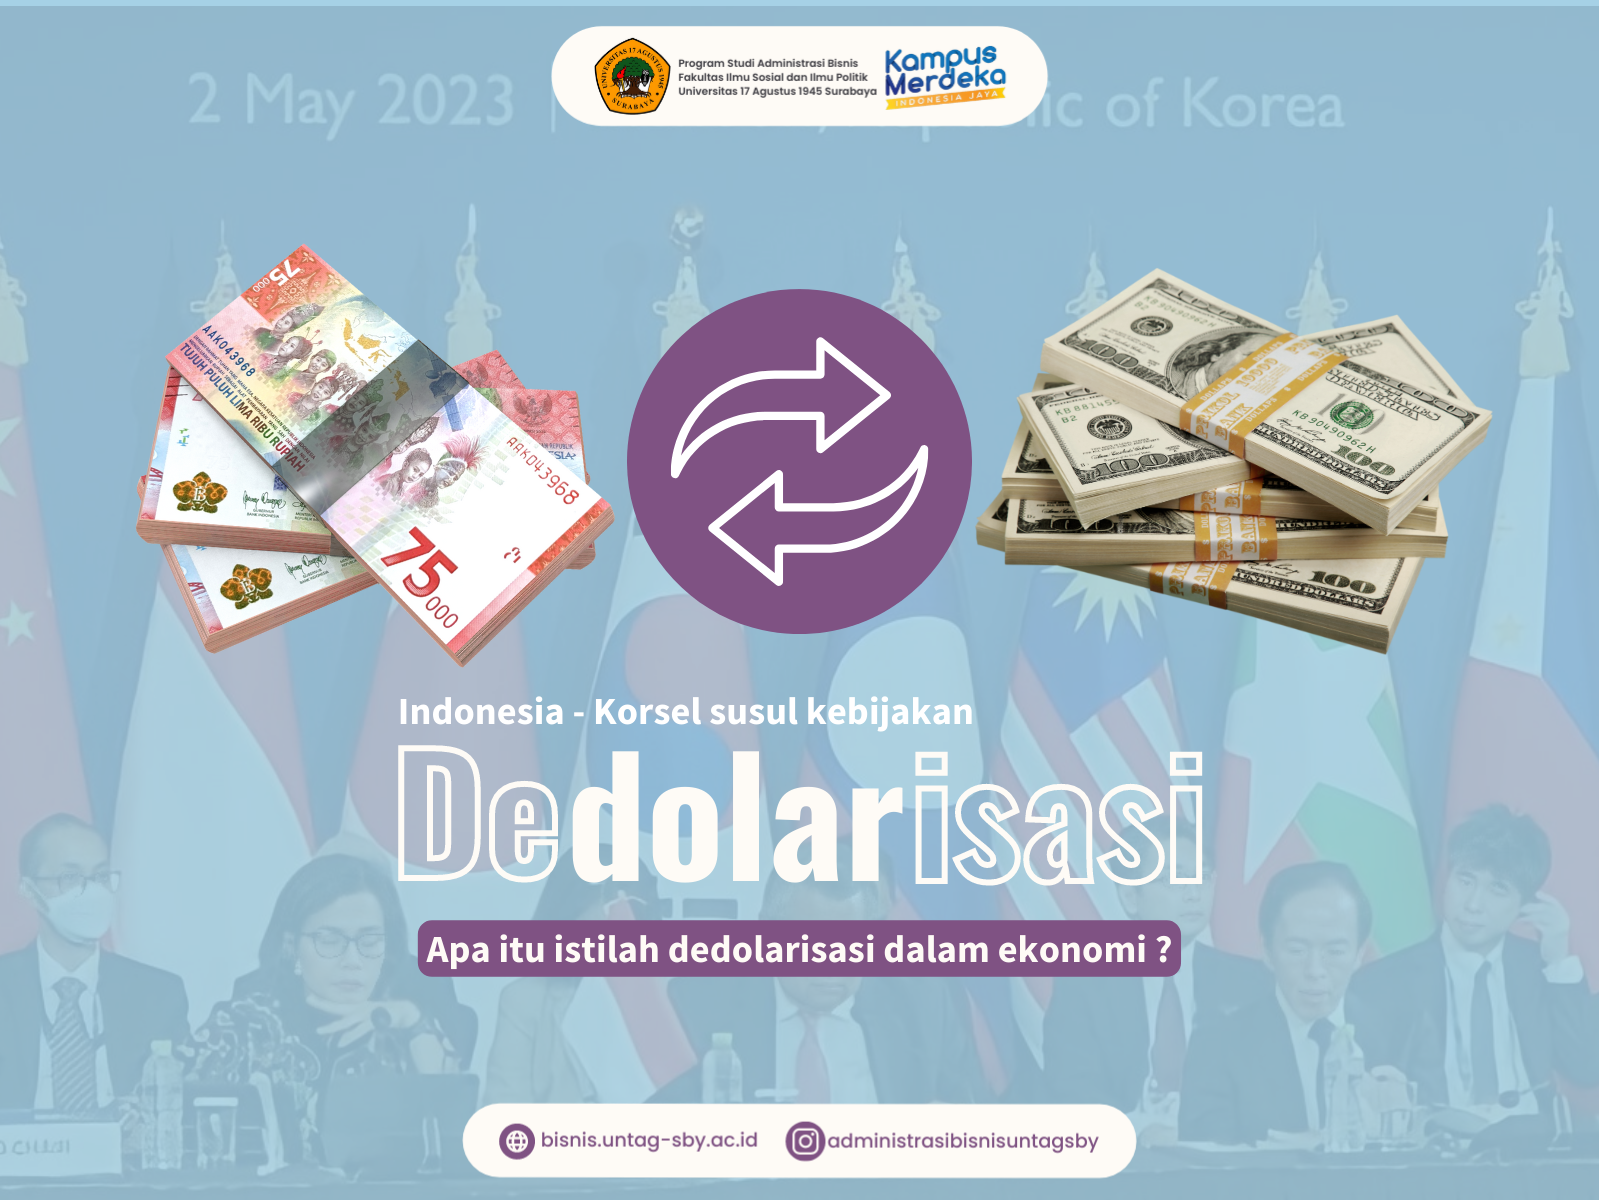 Indonesia-Korsel Menyusul Kebijakan Dedolarisasi. Apa Itu Istilah Dedolarisasi dalam Ekonomi?